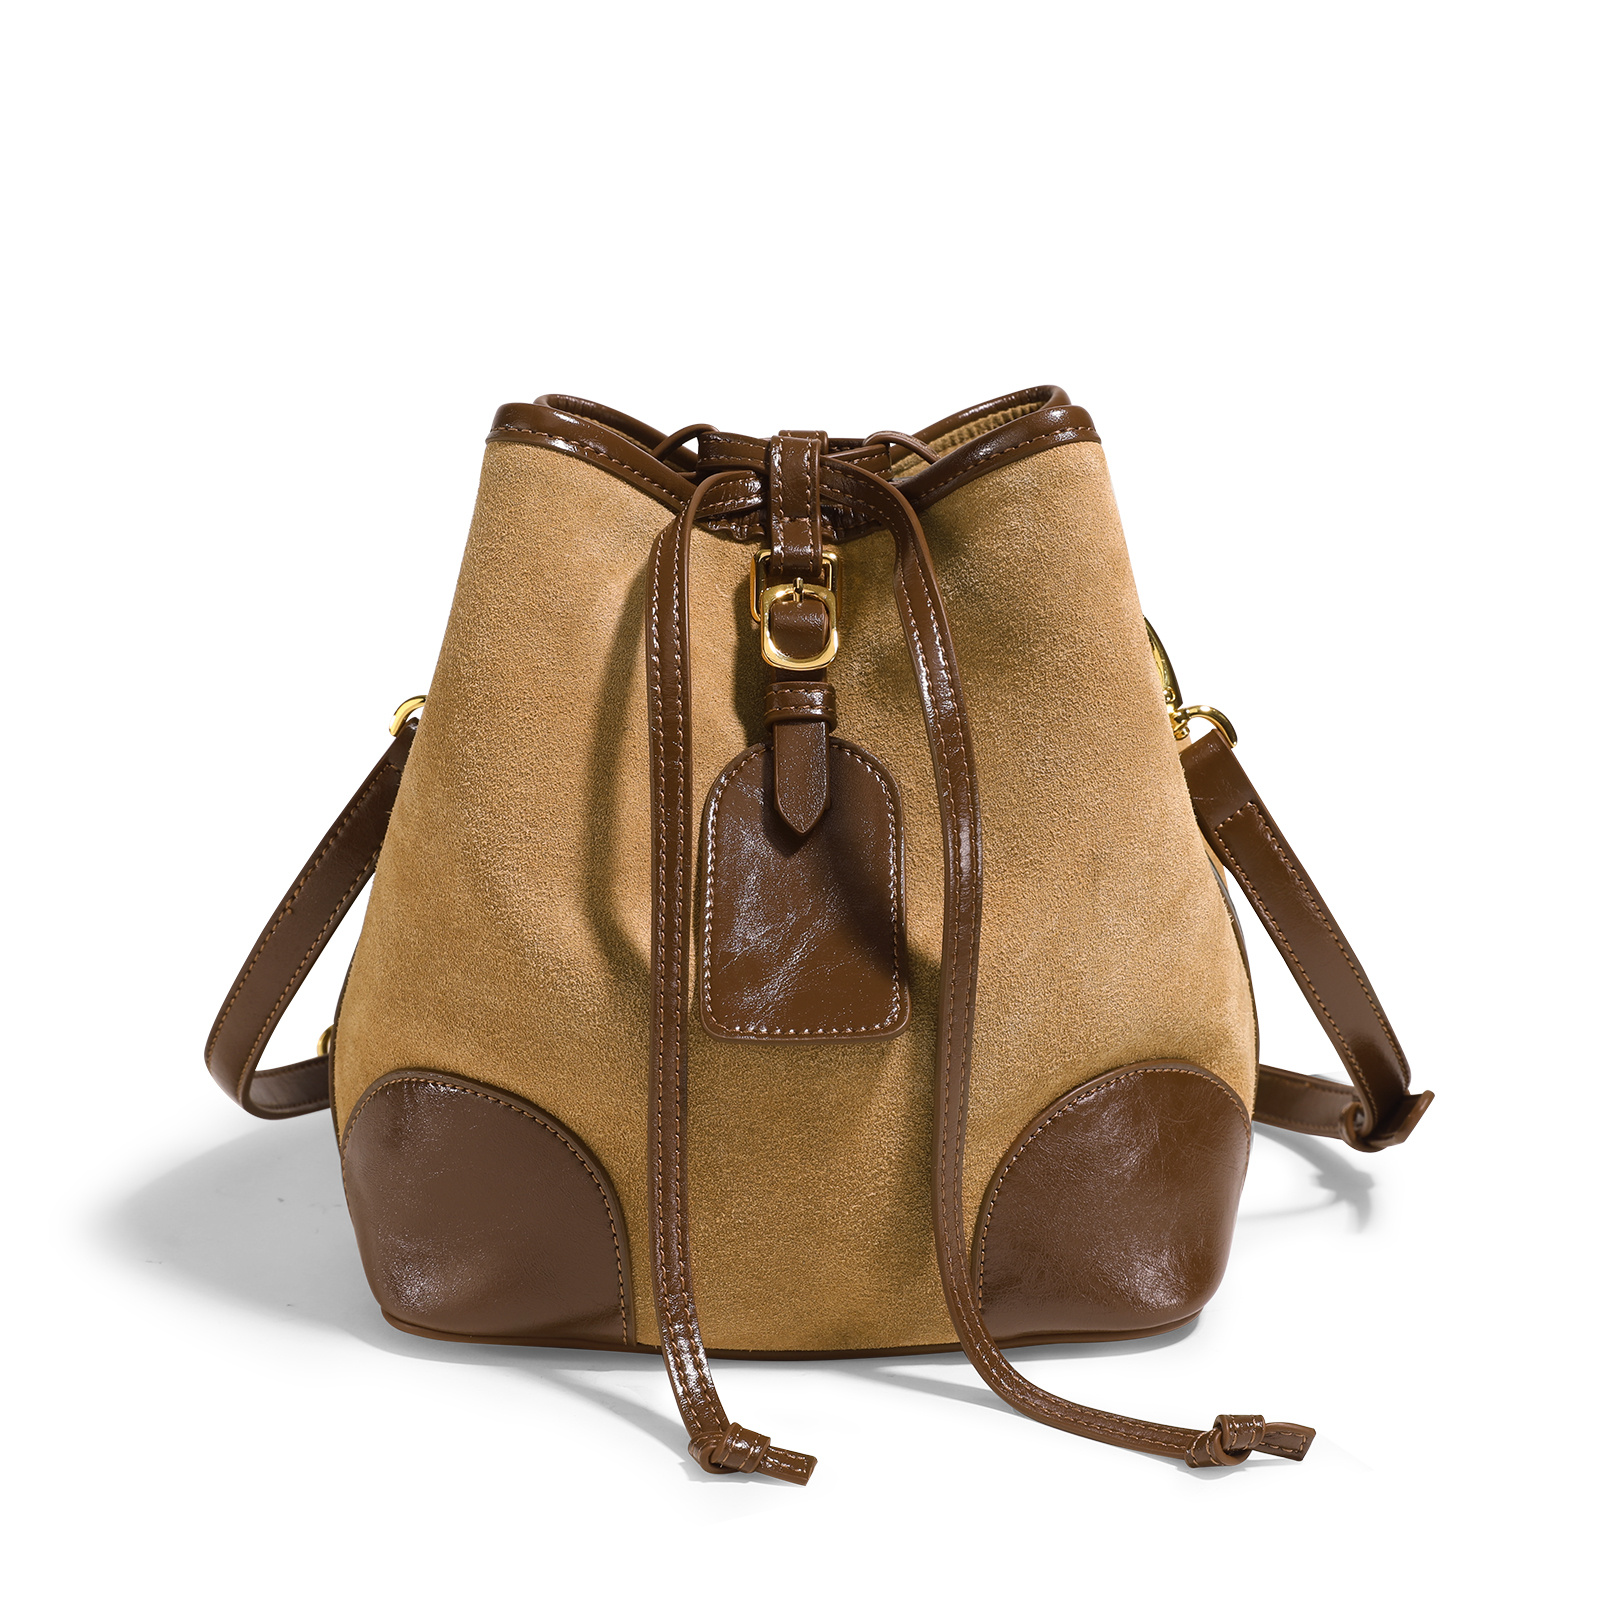 Small Suede Handbags Women, Luxury Suede Shoulder Bag